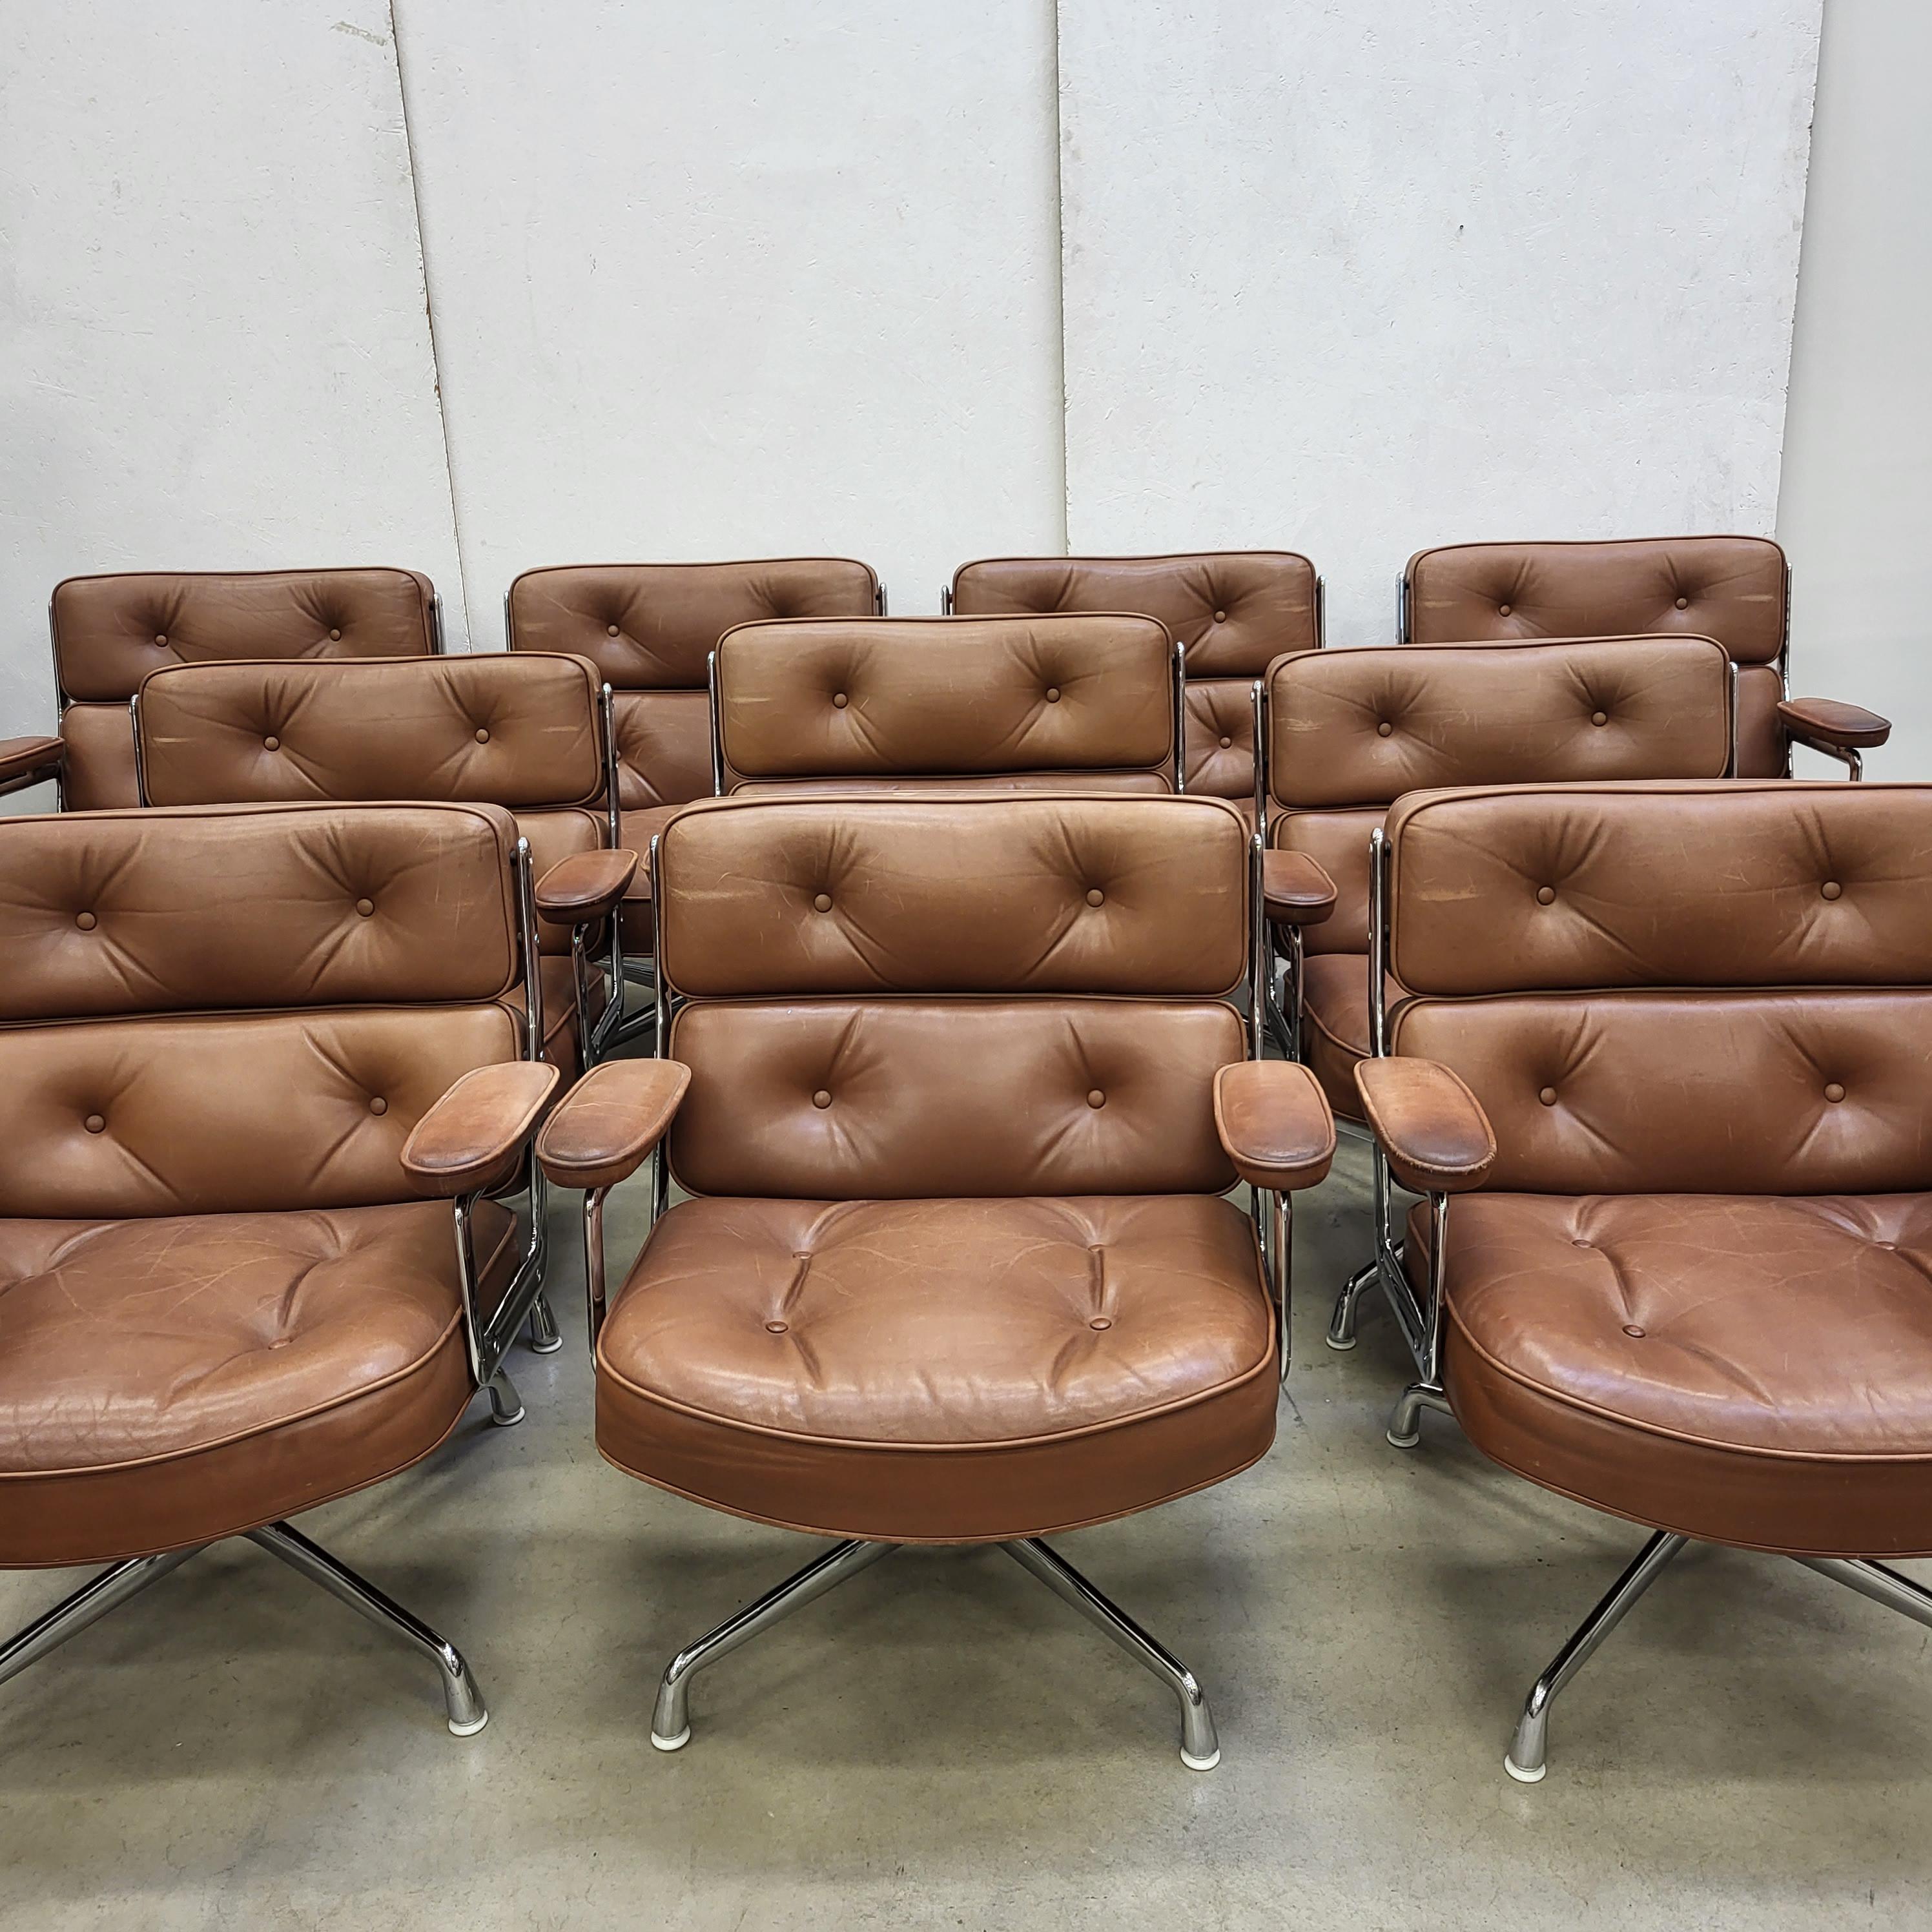 Rare série de 10 chaises de vestibule Time life modèle ES105 produites par Vitra/Herman Miller. 
Les chaises sont dotées d'une structure en aluminium chromé et d'une base en aluminium chromé.
Combinaison de couleurs rare et merveilleuse et édition